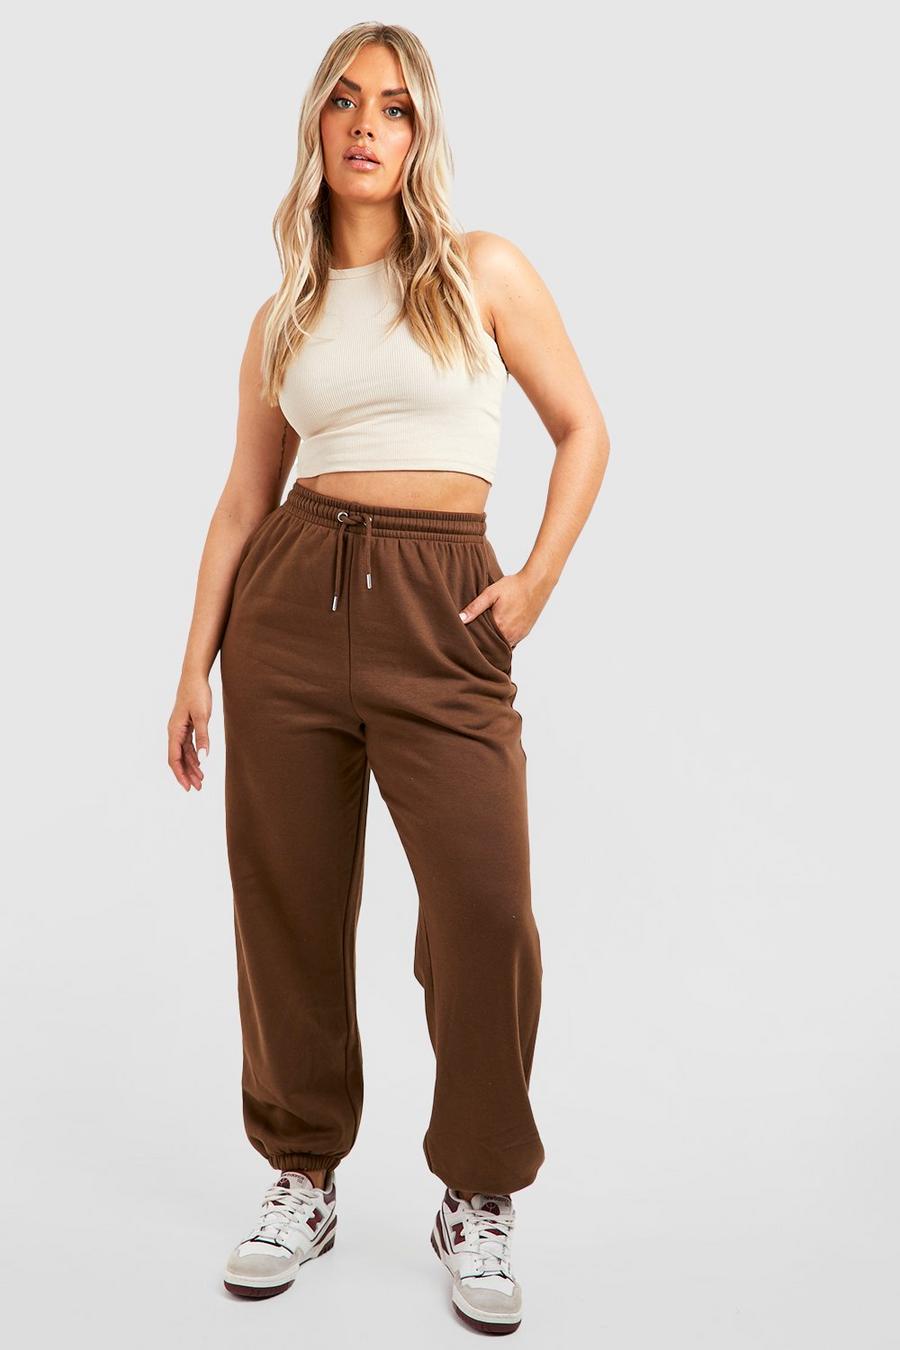 Pantaloni tuta Plus Size oversize Basic, Chocolate image number 1